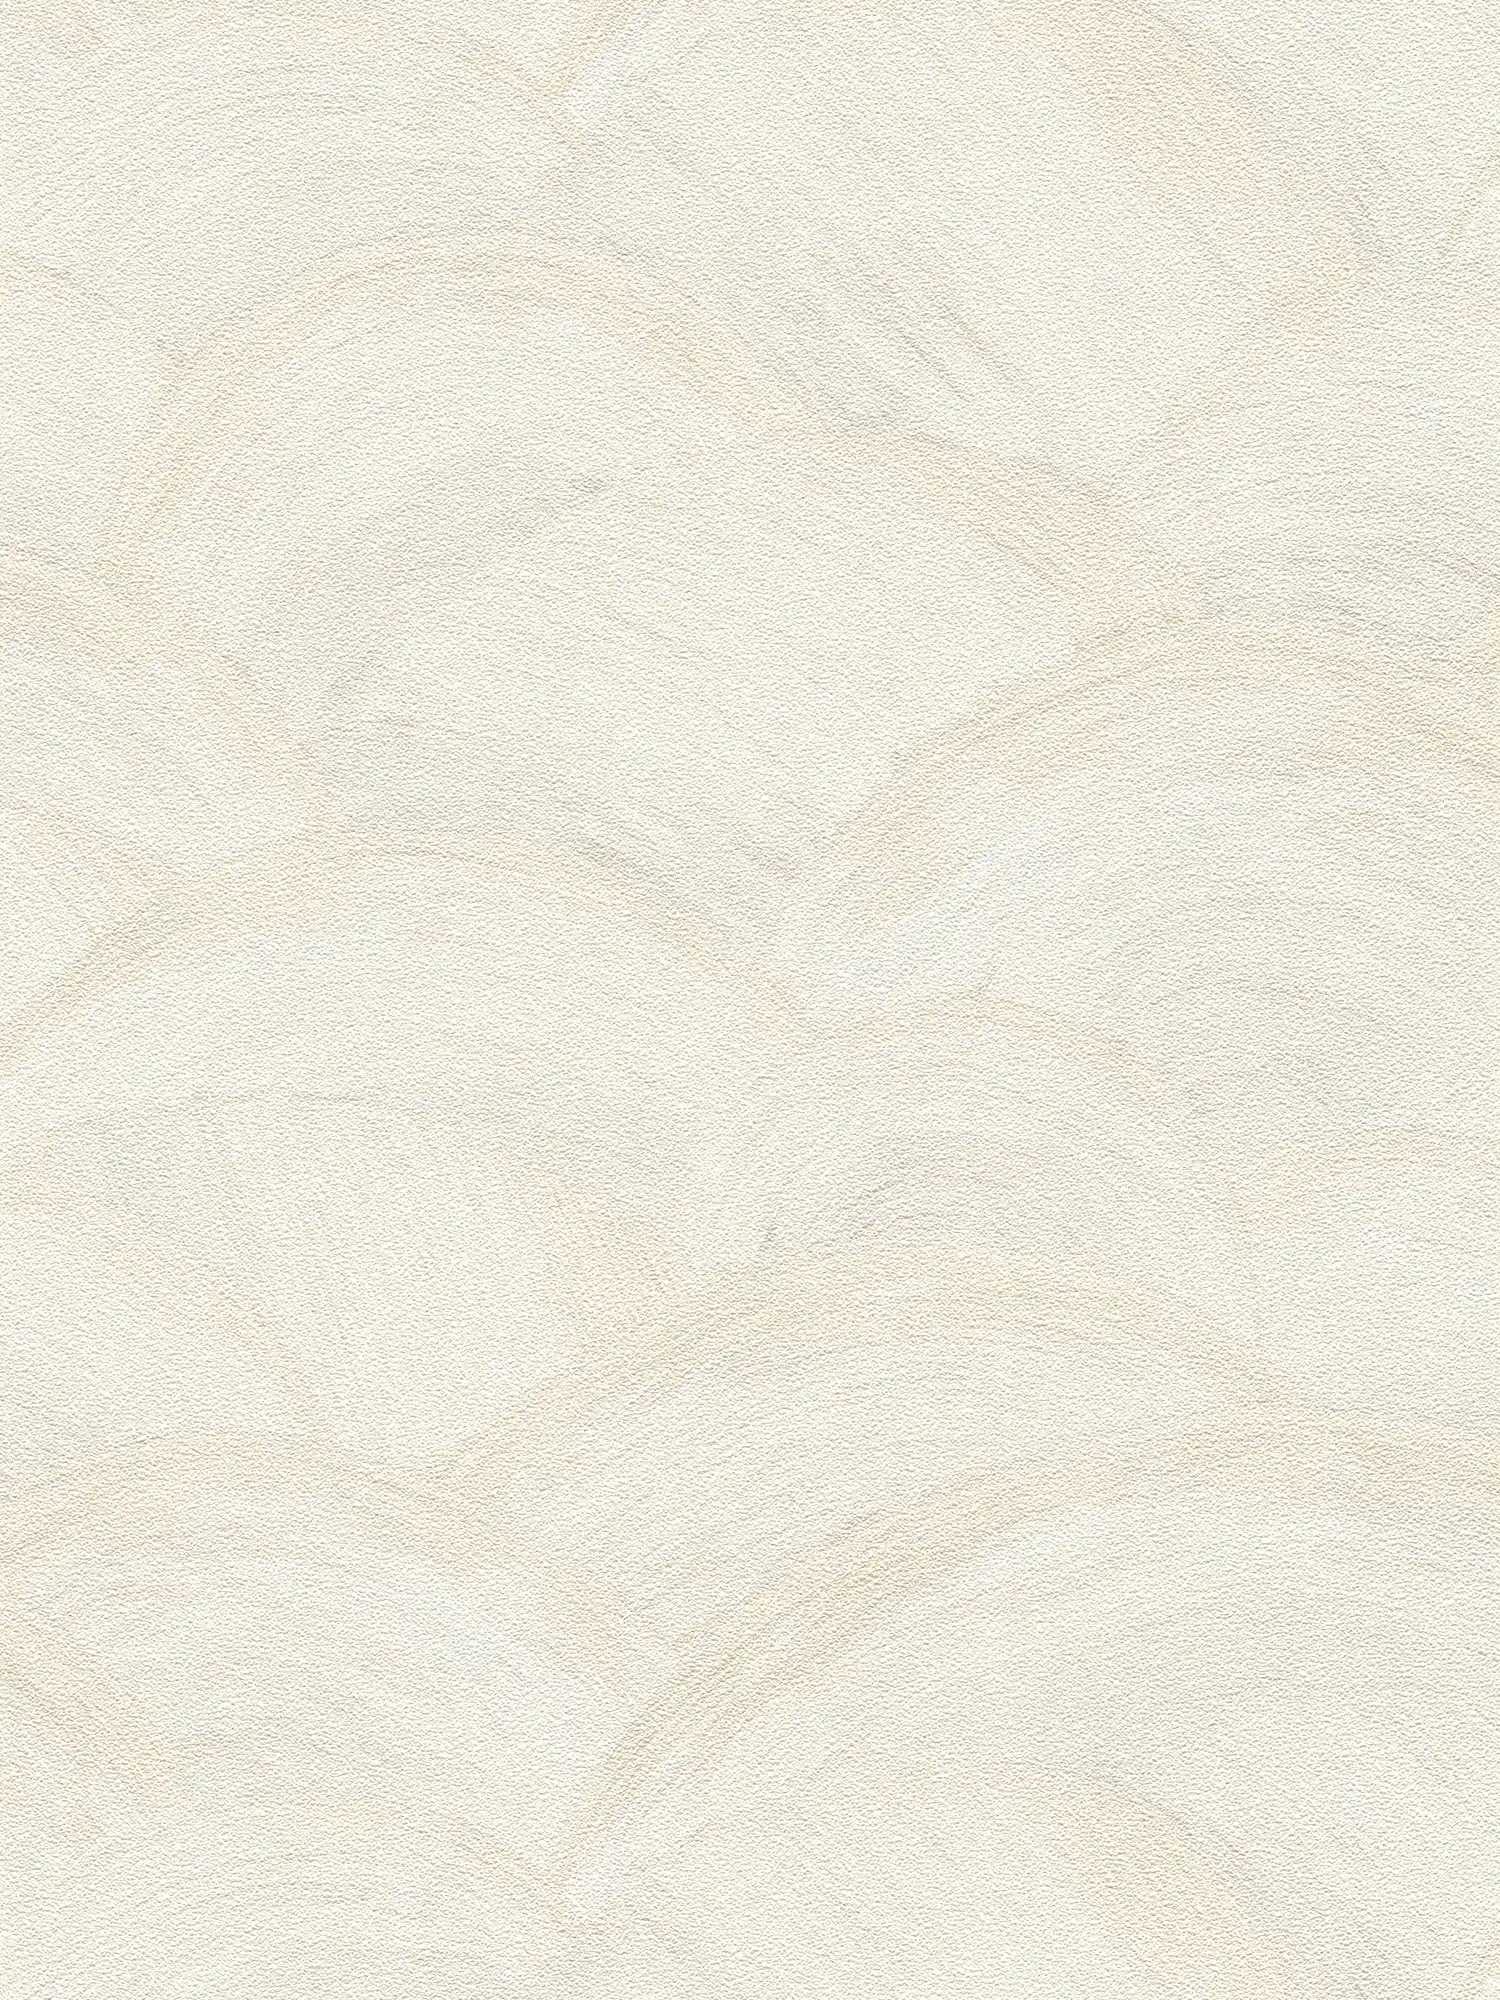 Vliestapete mit dezenten Wellenmuster – Weiß, Creme, Grau
